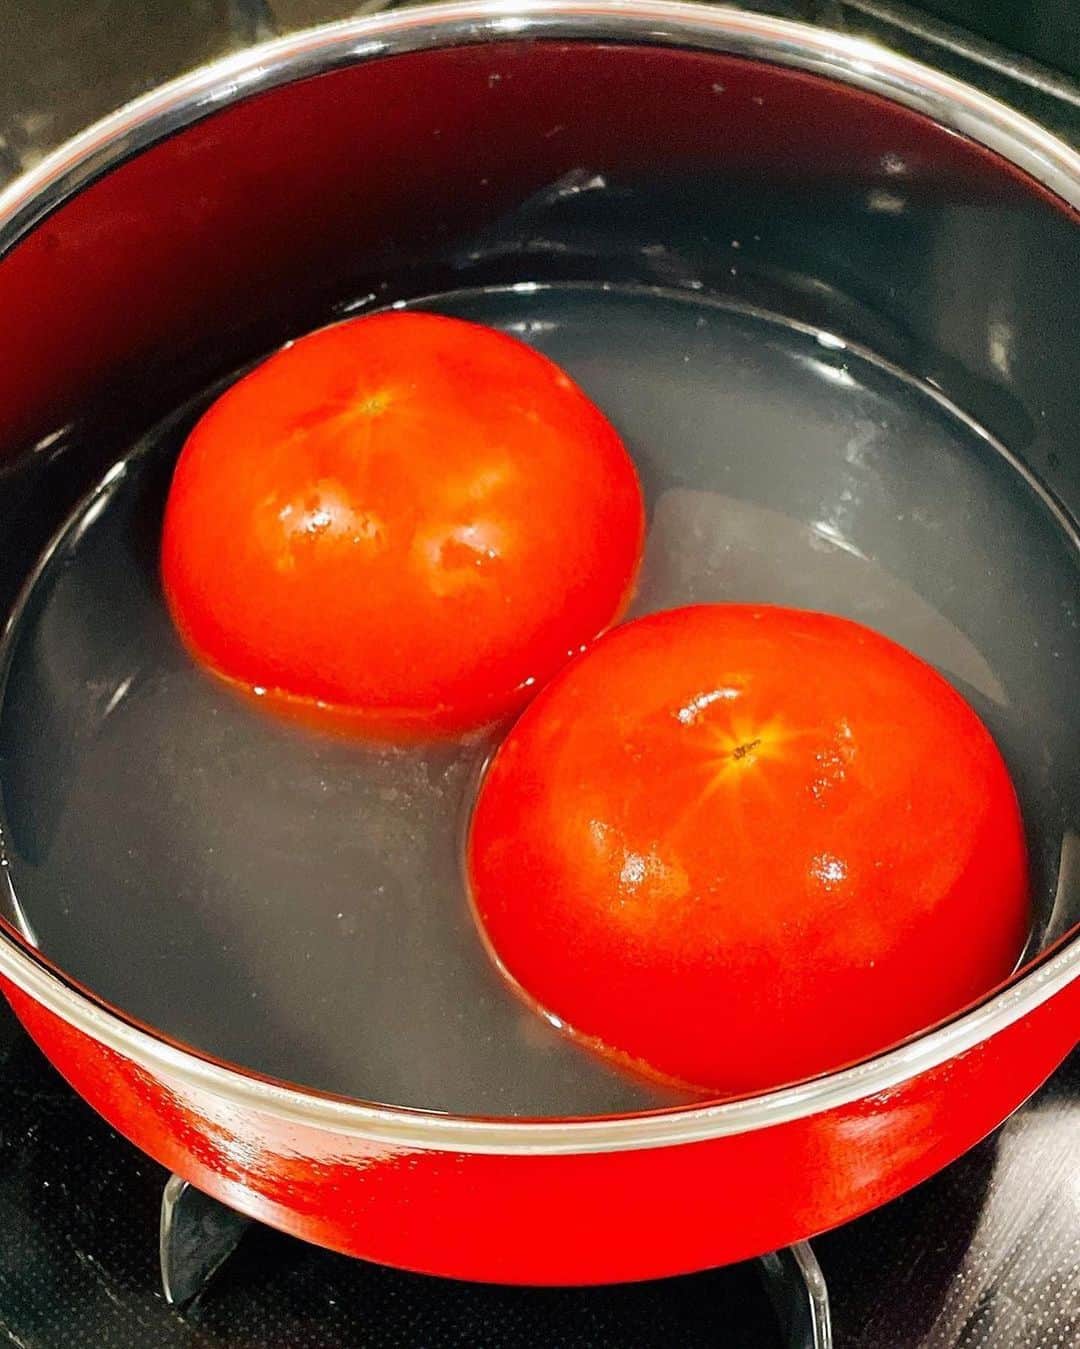 にんべん　おだしでキレイ習慣さんのインスタグラム写真 - (にんべん　おだしでキレイ習慣Instagram)「トマトの肉詰め🐟✨🍅⁉️ 季節によってこんなに#トマト のおいしさって違うんだっと日々感じております✨ あとやはり…価格が落ちるのが嬉しい🥹💕  今日も#にんべんだしアンバサダー さんの#おだしで夏飯 を紹介🐟🎵✨  @hi.romi.ta605 さん、ありがとうございます🐟💕 こんなに素敵なお料理が、とにかく簡単なのにびっくりしました‼︎‼︎🐟🍅✨冷製でもおいしい予感…‼︎‼︎  おいしいヒントがあったら、ぜひぜひアンバサダーさん同士もフォローし合ってみてくださいね☺️  ・ ・ ・  𓂃✺まるごとトマト #おだしで夏飯 ✺𓂃 ⁡ 夏野菜の代表🍅トマトまるごと味わっちゃいましょう❣️ #簡単レシピあり ⁡ 毎年　夏になると作る簡単料理😊 夏バテ気味だな～って思うときにちょうどいい感じですよ🍅　(トマト苦手じゃなければ) ⁡ 煮たトマトは酸味が抜けてまろやかで 鶏ひき肉と豆腐がお出汁を吸ってフワフワ食感 ⁡ 心がほんわか和らぐ、トマトとお出汁を味わうひとさらです☺️ ⁡ だしスープには、 🟡トウモロコシ 🟠にんじん 🟢インゲン豆 ⚪️玉ねぎ も散らして、彩りも加えてみました ⁡ ⁡ ꙳꙳꙳˙˙˙꙳꙳꙳˙˙˙꙳꙳꙳˙˙˙꙳꙳꙳ ⁡ ˗˗˗˗˗˗˗˗˗˗˗˗˗˗˗˗˗˗˗˗˗˗˗˗˗˗˗˗˗˗˗˗˗˗˗˗˗˗˗˗˗˗˗˗˗˗˗˗˗˗˗˗˗˗˗˗ まるごとトマトの出汁スープ ˗˗˗˗˗˗˗˗˗˗˗˗˗˗˗˗˗˗˗˗˗˗˗˗˗˗˗˗˗˗˗˗˗˗˗˗˗˗˗˗˗˗˗˗˗˗˗˗˗˗˗˗˗˗˗˗˗ 【材料】 トマト…２個 鶏ひき肉…100g 豆腐（水切りする）…100g 玉ねぎ（みじん切り）…30g 塩こしょう...少々 ⁡ ◆鶏がらかつおポーションだし...１個 ◆水...200ml～300ml 　※トマトの大きさや、味の好みで濃さは調整してください。 ⁡ 塩...小さじ 1／2～1／4 ⁡ ⁡ 【作り方】 1⃣豆腐は水切りしておく。 　玉ねぎはみじん切りにしておく。 ⁡ 2⃣トマトはヘタの部分を切り落とし 　中身をスプーンでくり抜く。 ⁡ 3⃣鶏ひき肉、豆腐、玉ねぎ、塩コショウを 　よく混ぜ合わせ、トマトの中に詰める。 ⁡ 4⃣鶏ひき肉側を下にして、鍋にトマトをいれる。 ⁡ 5⃣◆を入れて、弱火で20分ほど煮ると 　トマトの皮が自然とはがれてくるので、すべて取り除く。 ⁡ 6⃣最後に塩で味を調えて 　出来上がり ⁡ ⁡ ꙳꙳꙳˙˙˙꙳꙳꙳˙˙˙꙳꙳꙳˙˙˙꙳꙳꙳ ⁡ ⁡ 今日も見ていただきありがとうございます😊 皆さまの今日が素敵な一日になりますように💗 ⁡ 🌈𝙻𝙾𝚅𝙴 & 𝙿𝙴𝙰𝙲𝙴 & 𝚂𝙼𝙸𝙻𝙴 & 𝙹𝙾𝚈!!🌈 ⁡ ⁡ ⁡ #ぎゅーっとポーションだし #にんべんだしアンバサダー #だしのある生活 #にんべん#ある夜のおうちごはん  #夏野菜レシピ #旬の野菜を食べよう  #夏のお野菜 #夏バテレシピ  #元気になるレシピ #元気になるごはん #からだにいいごはん　#からだに優しいごはん  #楽しいおうちごはん #おうちごはんを楽しもう #オリーブノート #オリーブノートアンバサダー #フーディーテーブル #ネクストフーディスト」6月29日 10時30分 - ninben.dashiambassador